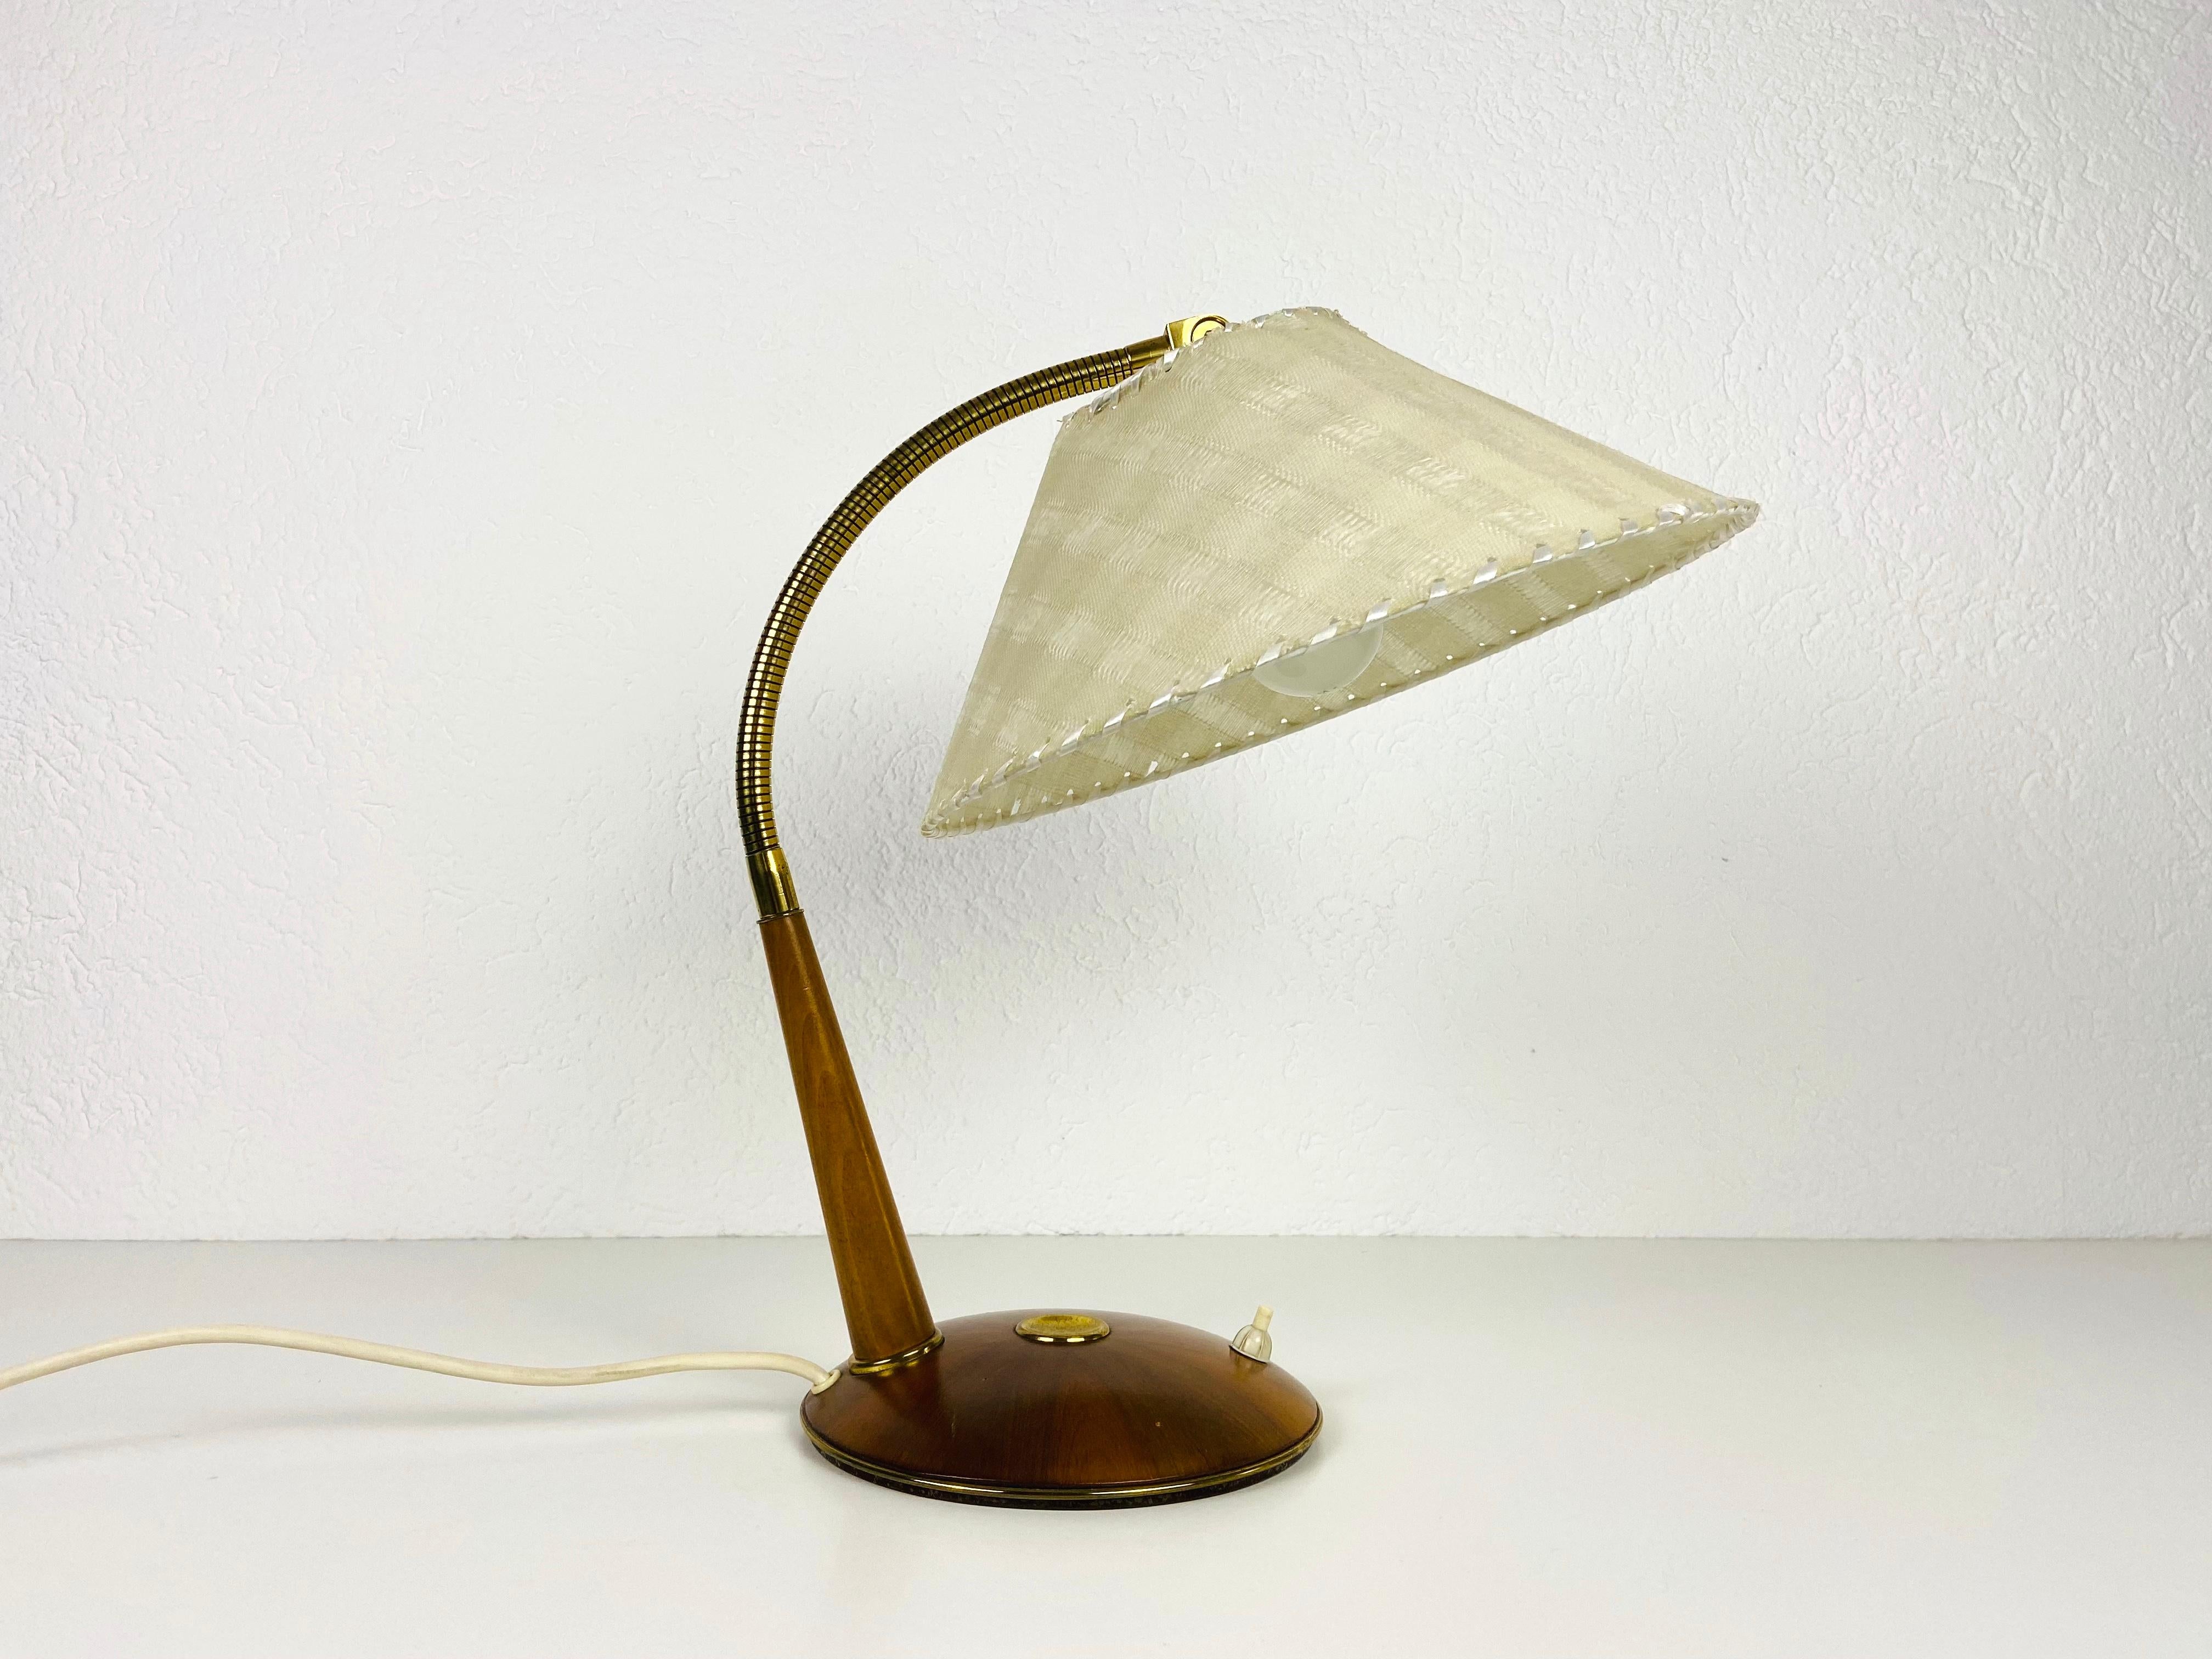 Une magnifique lampe en teck fabriquée dans les années 1960 par Temde en Suisse. Il est fascinant avec son abat-jour rare.

La lampe nécessite une ampoule E27 (US E26). Fonctionne avec les deux 120/220V. Bon état vintage.

Expédition express